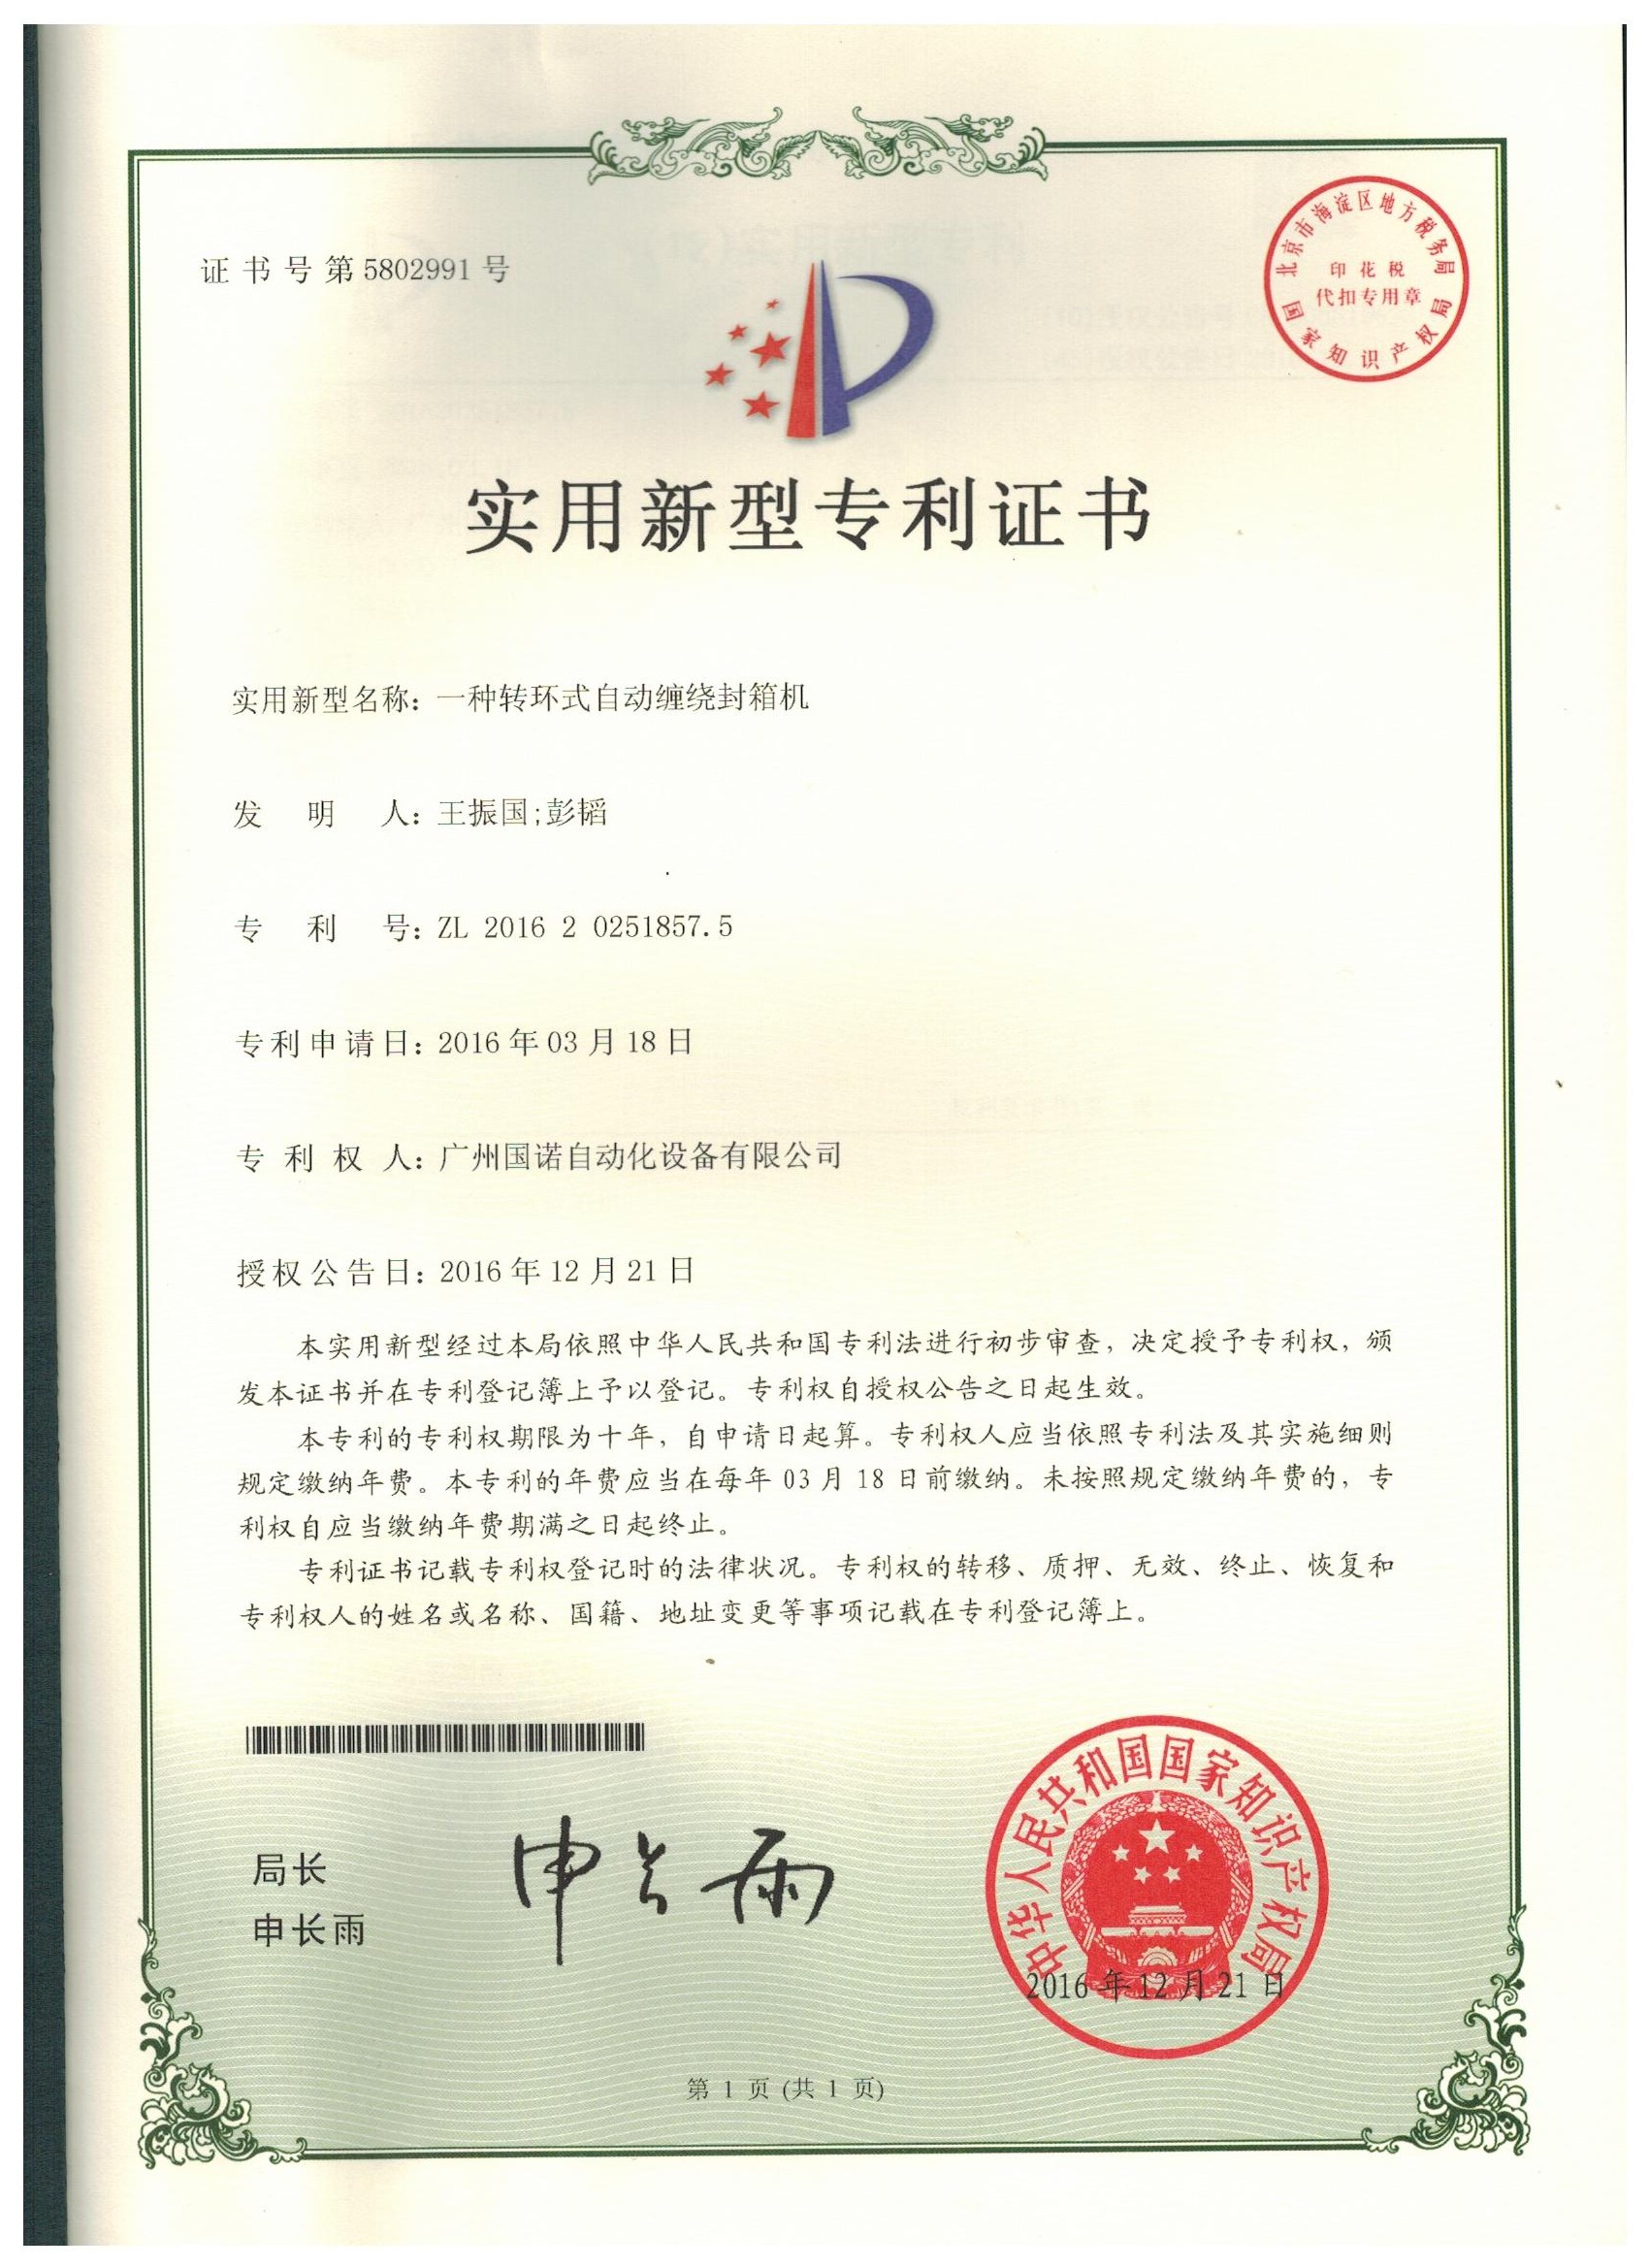 Steel Conveyor Belt Certificate